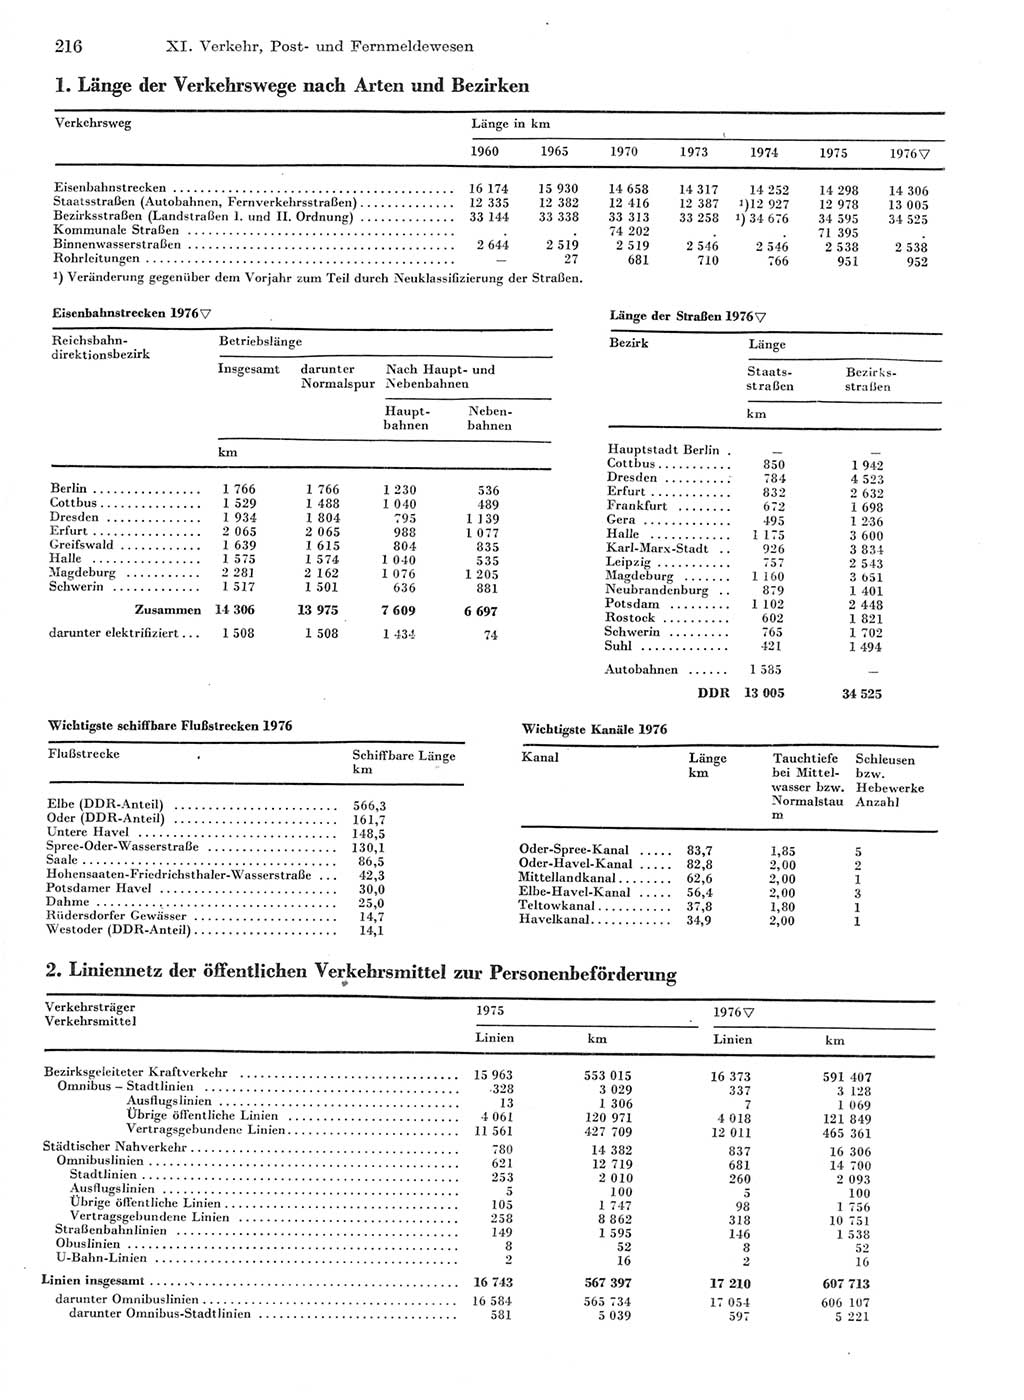 Statistisches Jahrbuch der Deutschen Demokratischen Republik (DDR) 1977, Seite 216 (Stat. Jb. DDR 1977, S. 216)